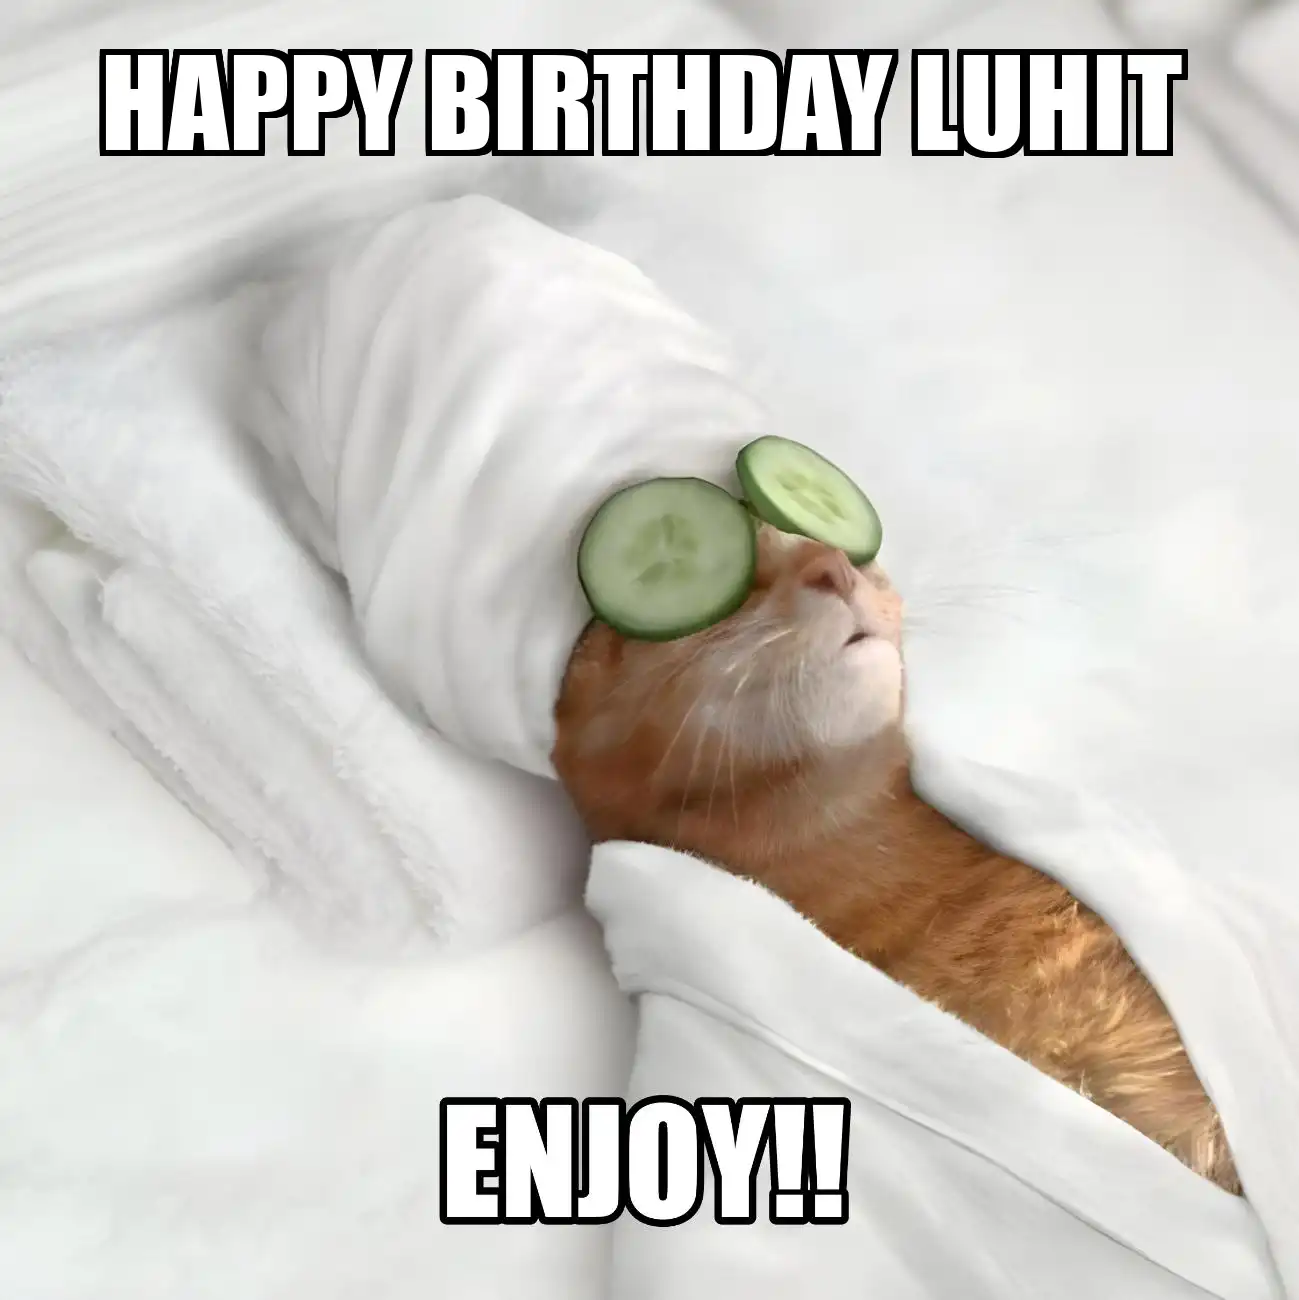 Happy Birthday Luhit Enjoy Cat Meme